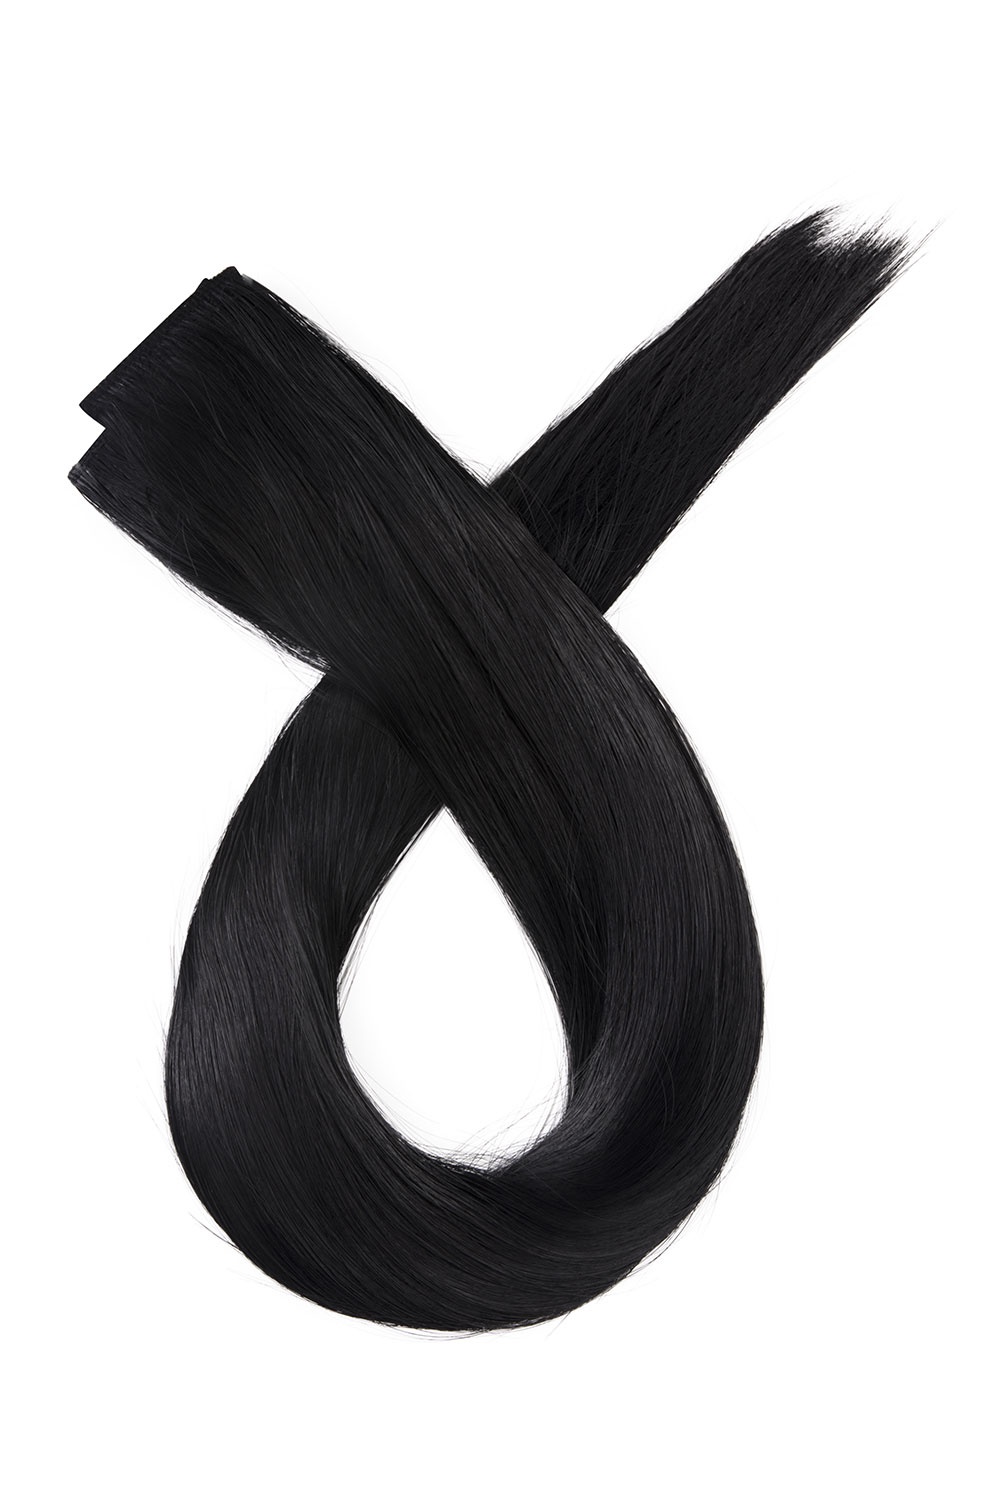 Čierne clip in vlasy, 50cm, 115g, farba 1